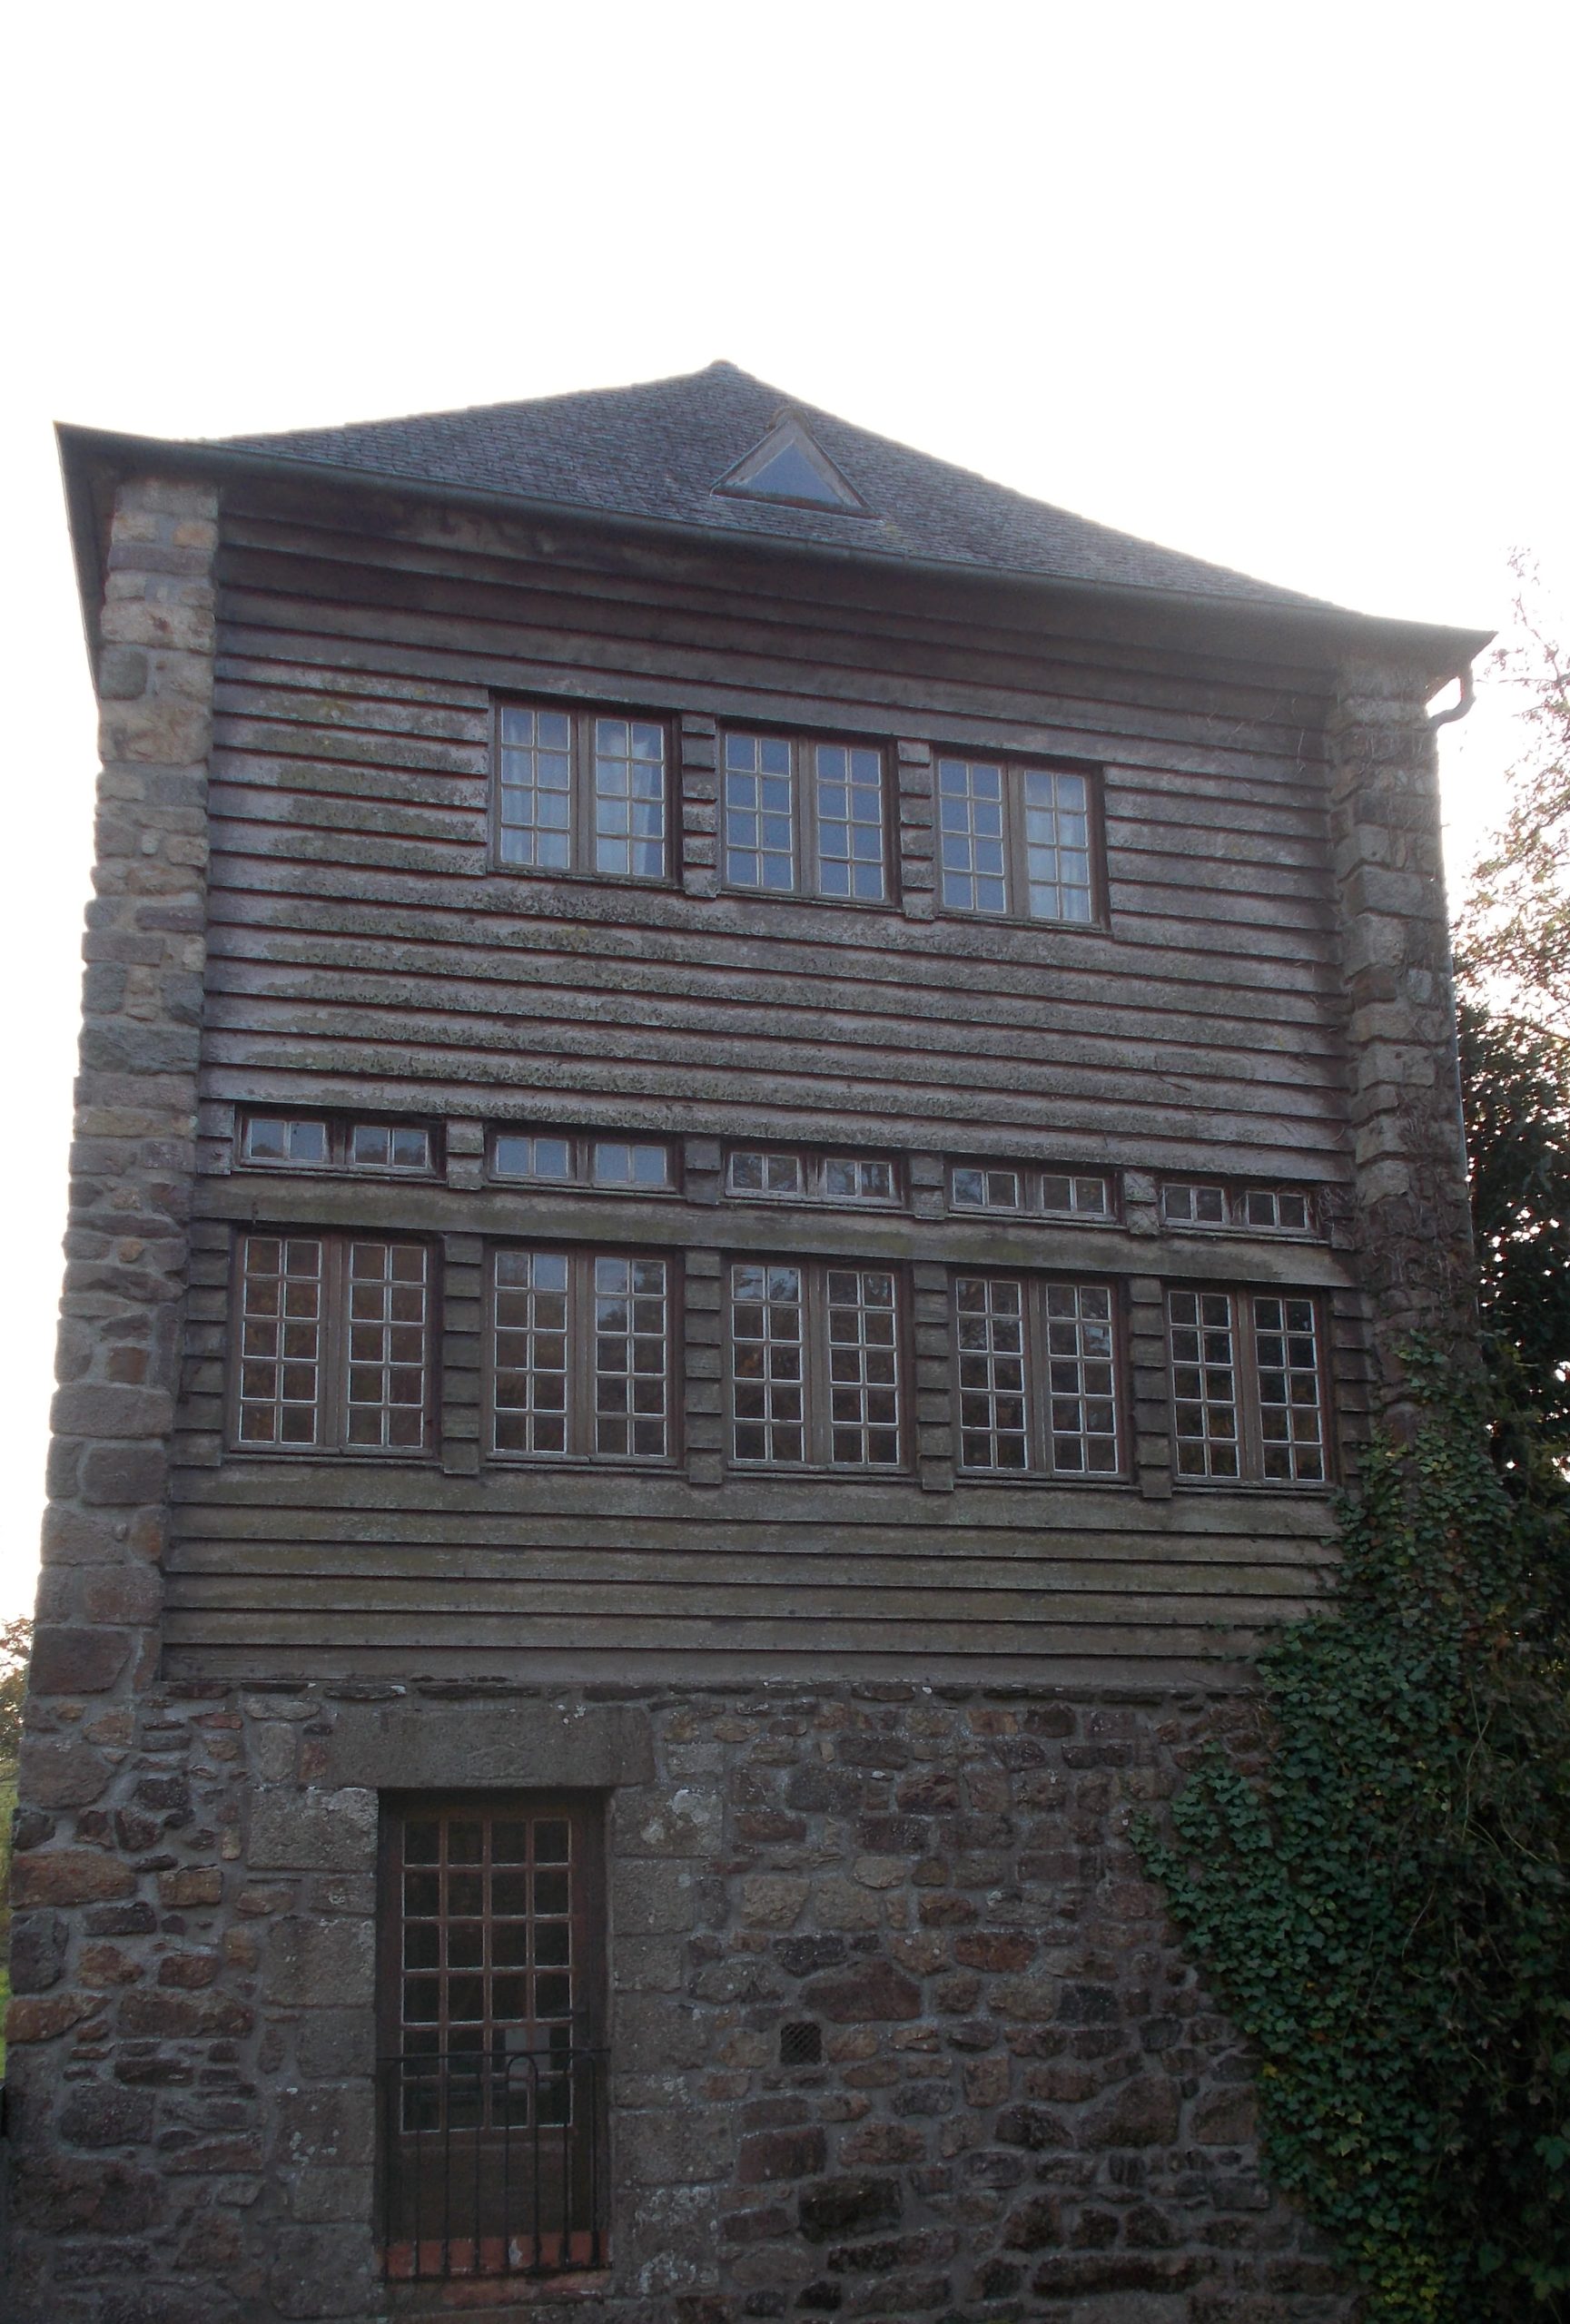 Moulin ancien inscrit au patrimoine national avant réfection